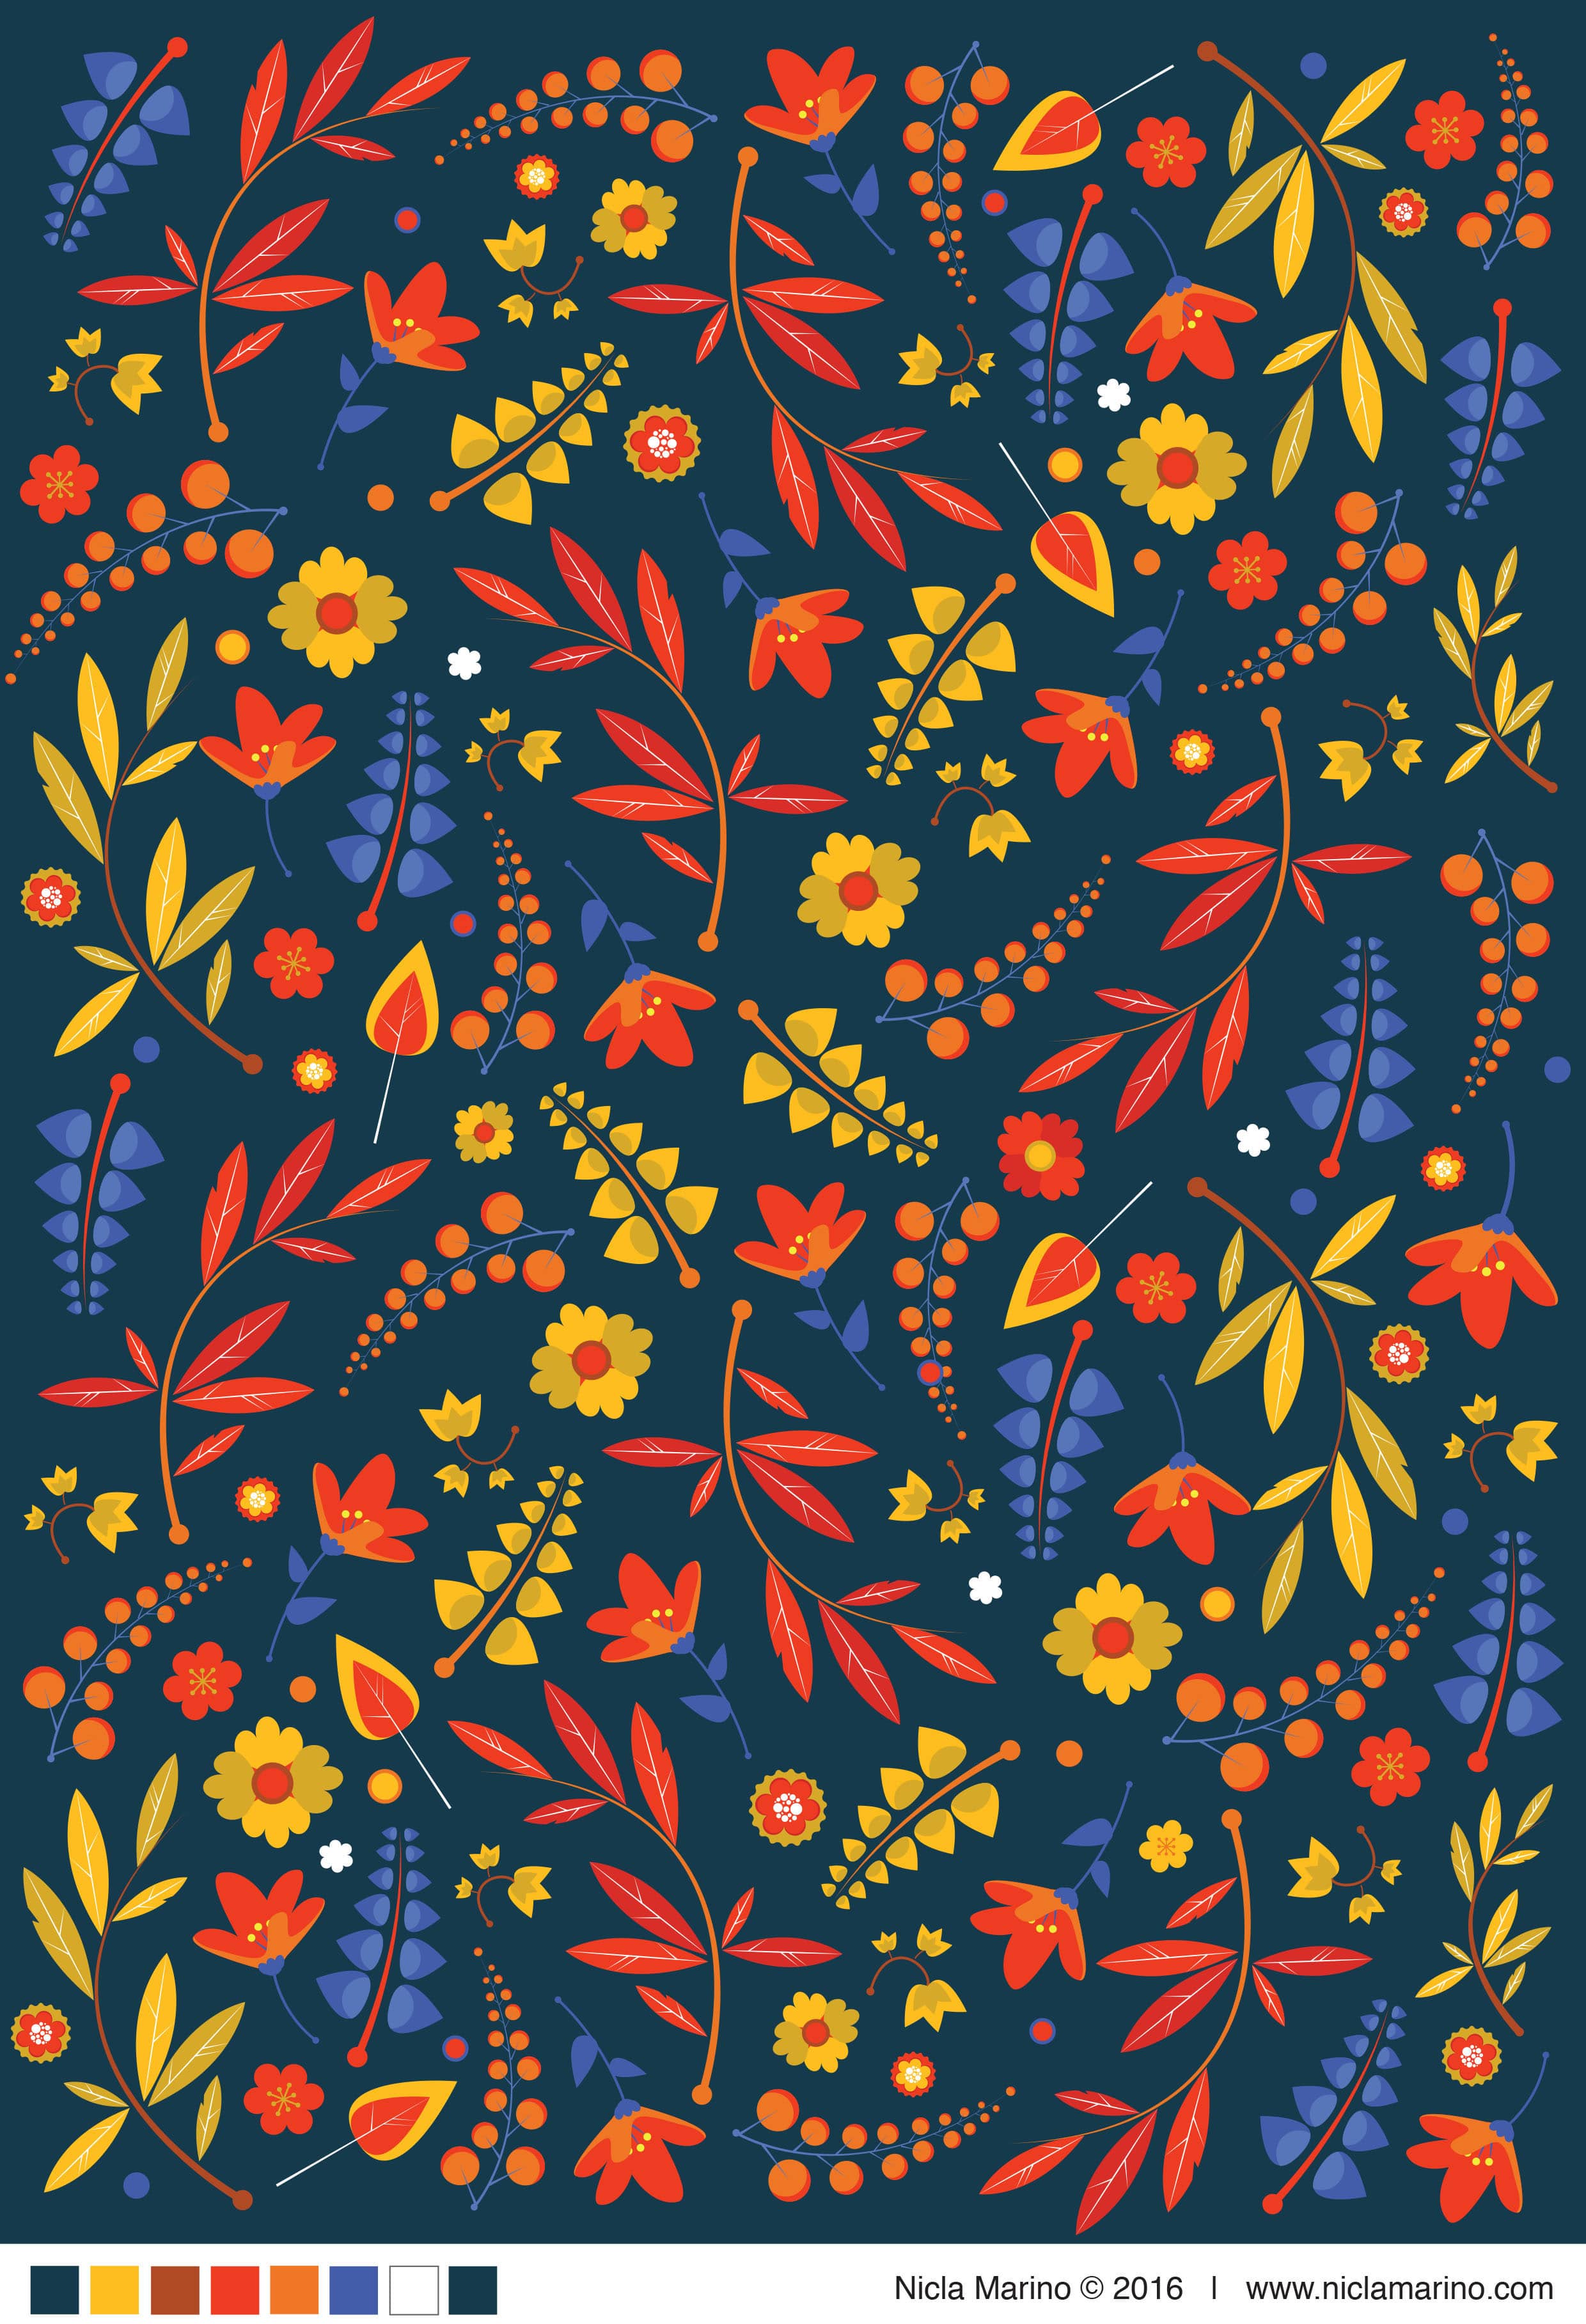 nicla-marino-floral-pattern-03-min